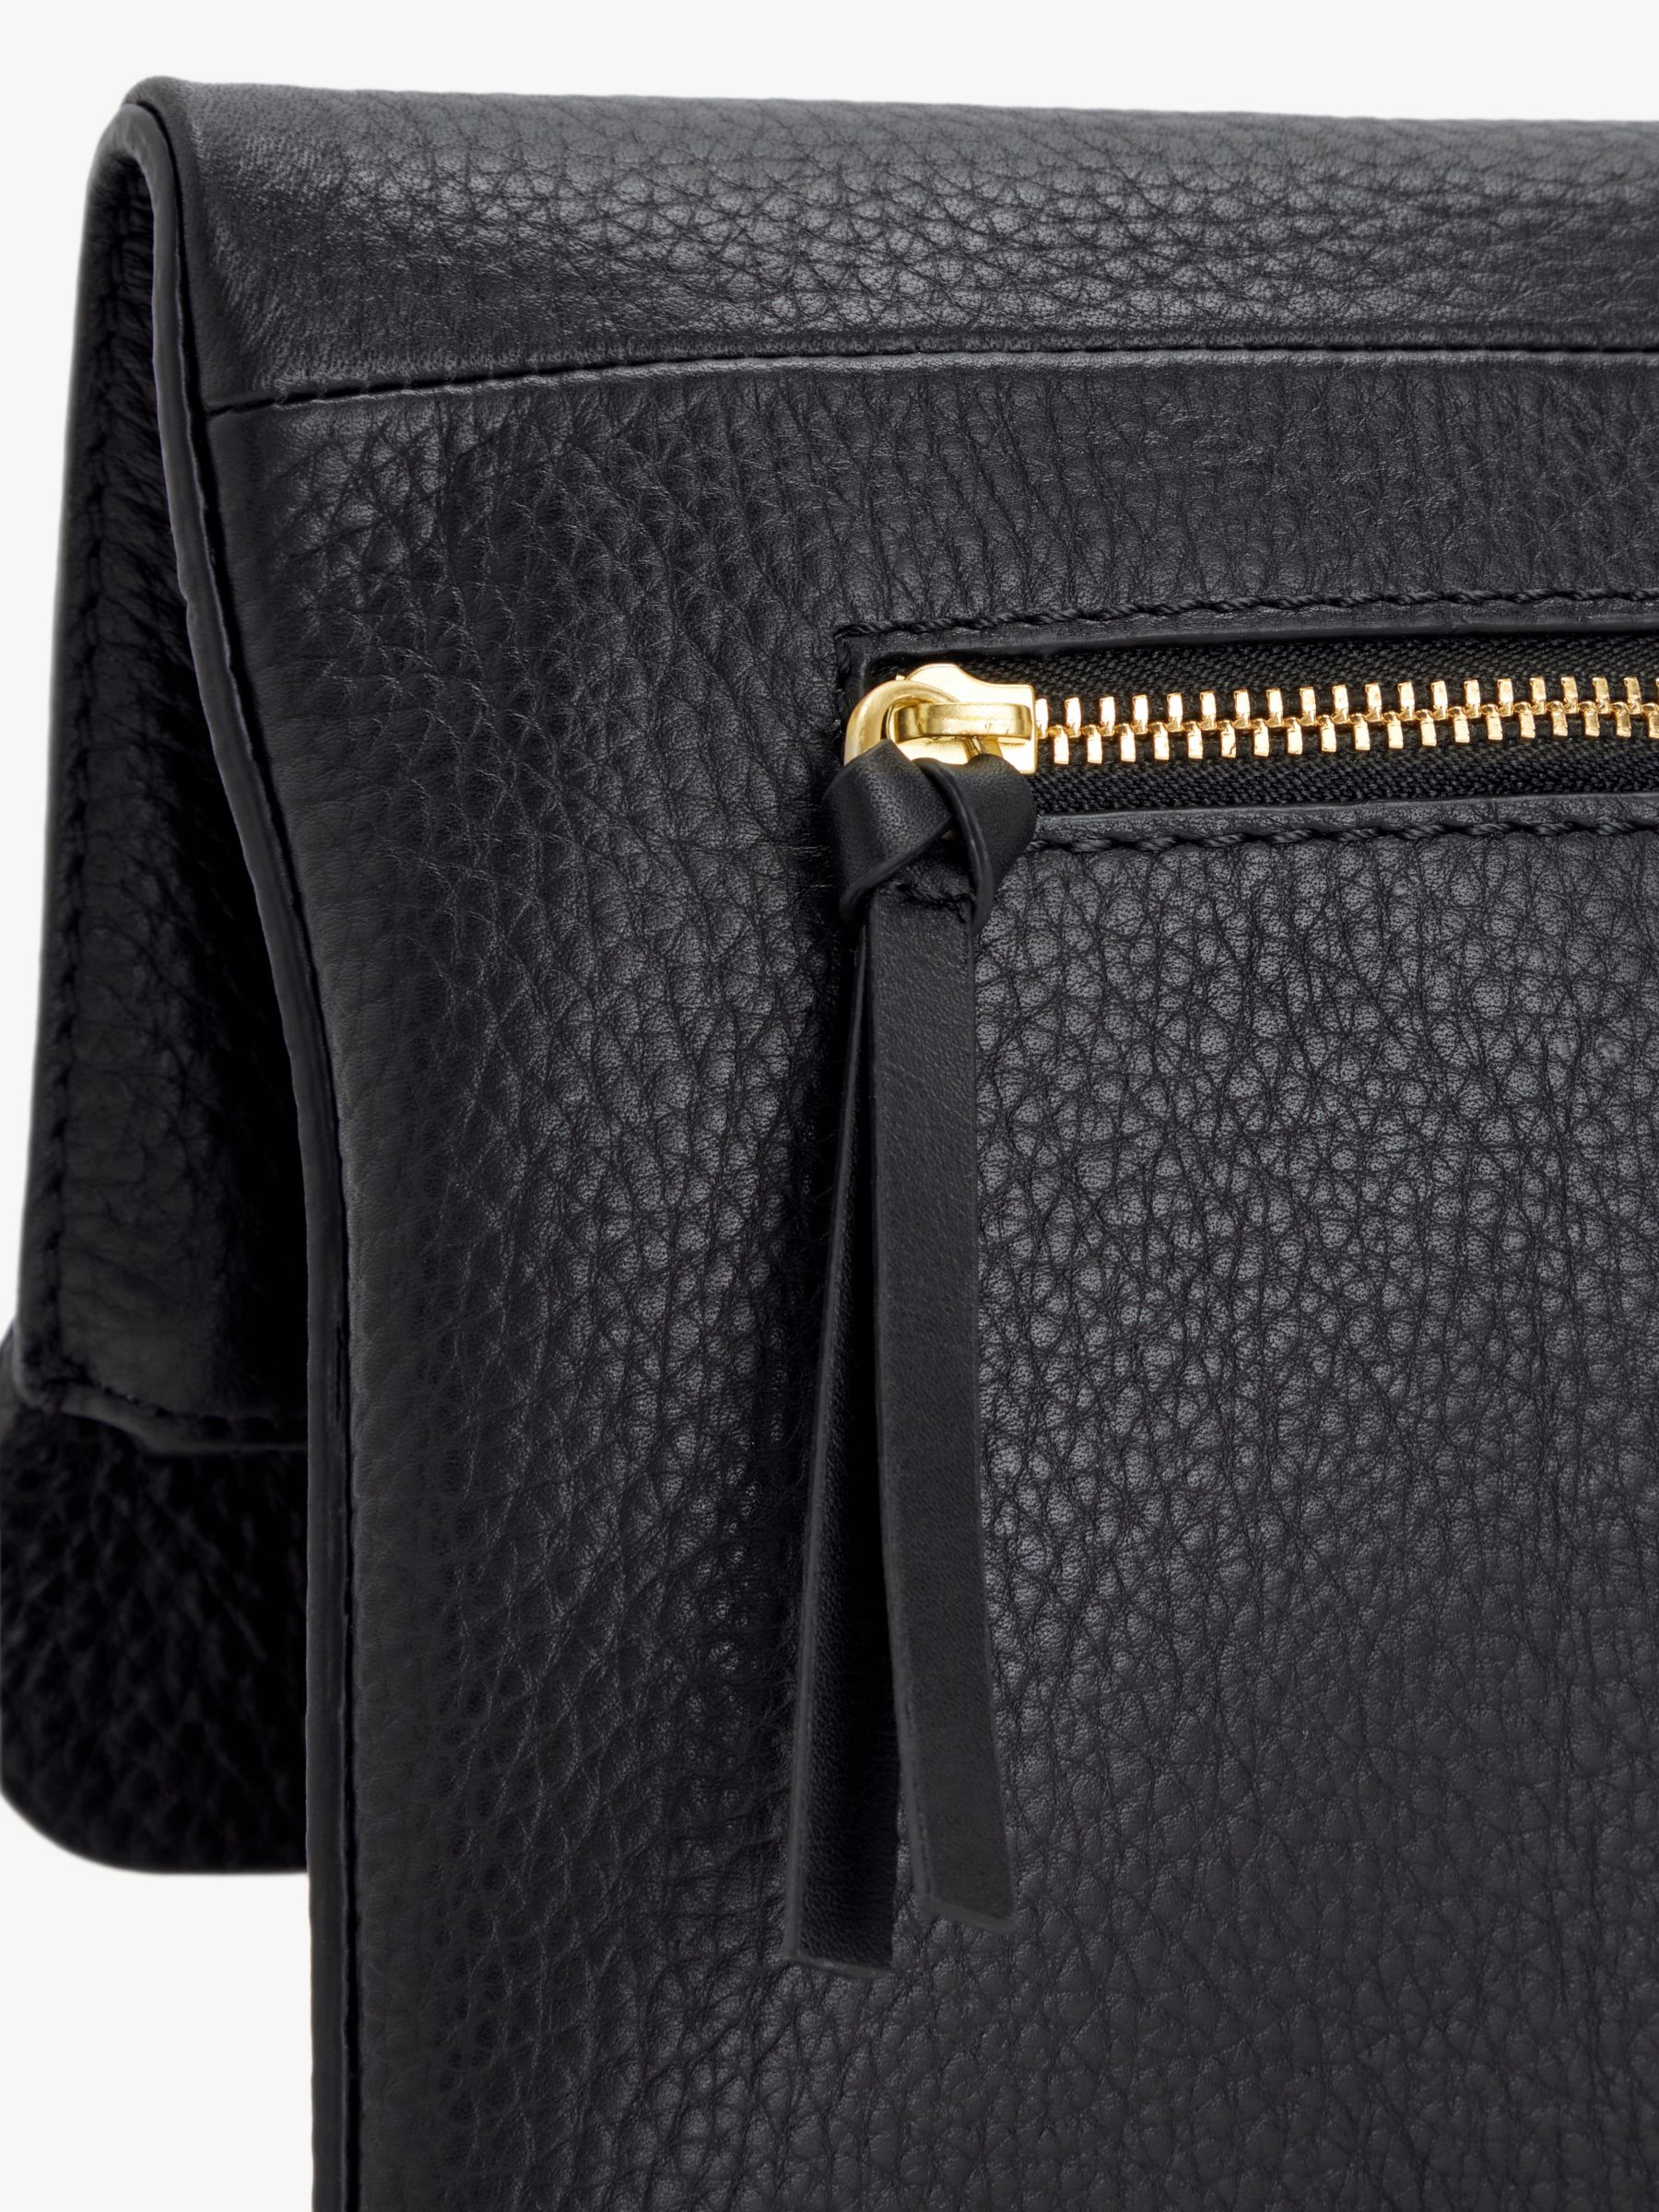 John Lewis Leather Mistry Large Clutch Bag, Black